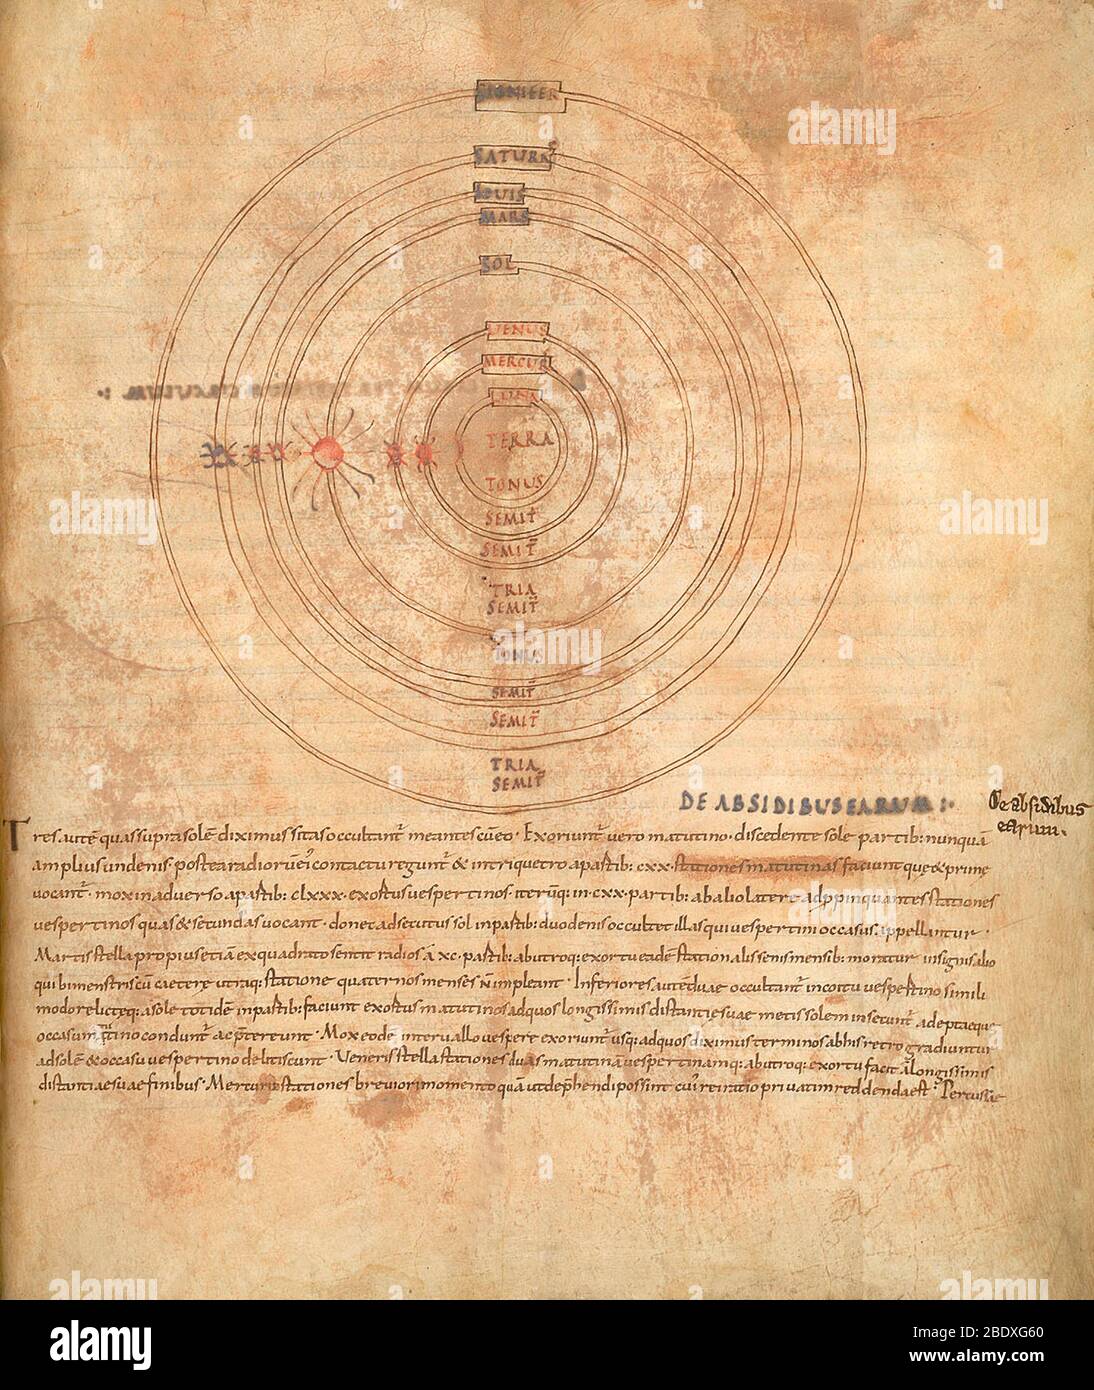 Aratea, système de Ptolemaic Banque D'Images